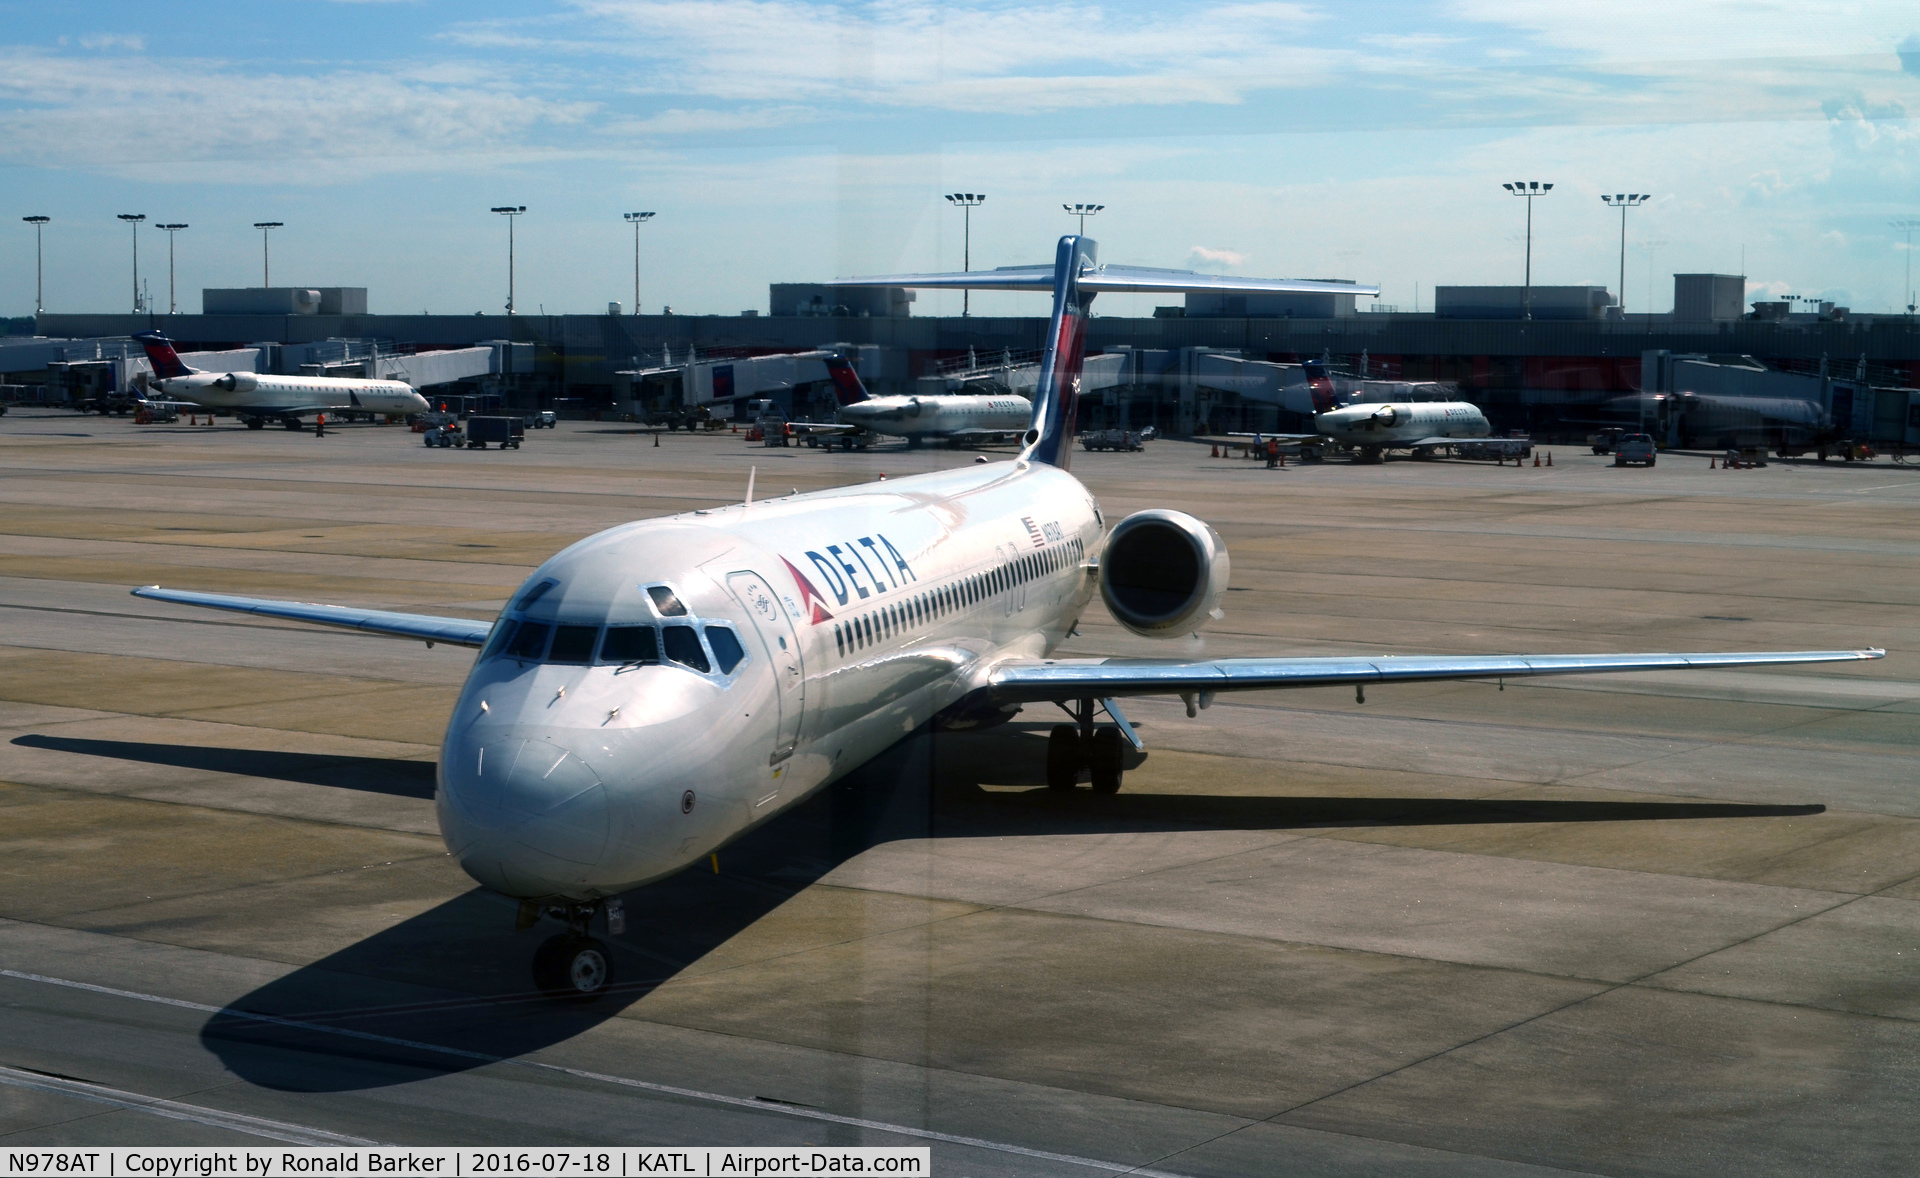 N978AT, 2002 Boeing 717-200 C/N 55037, Arriving Gate C31 Atlanta